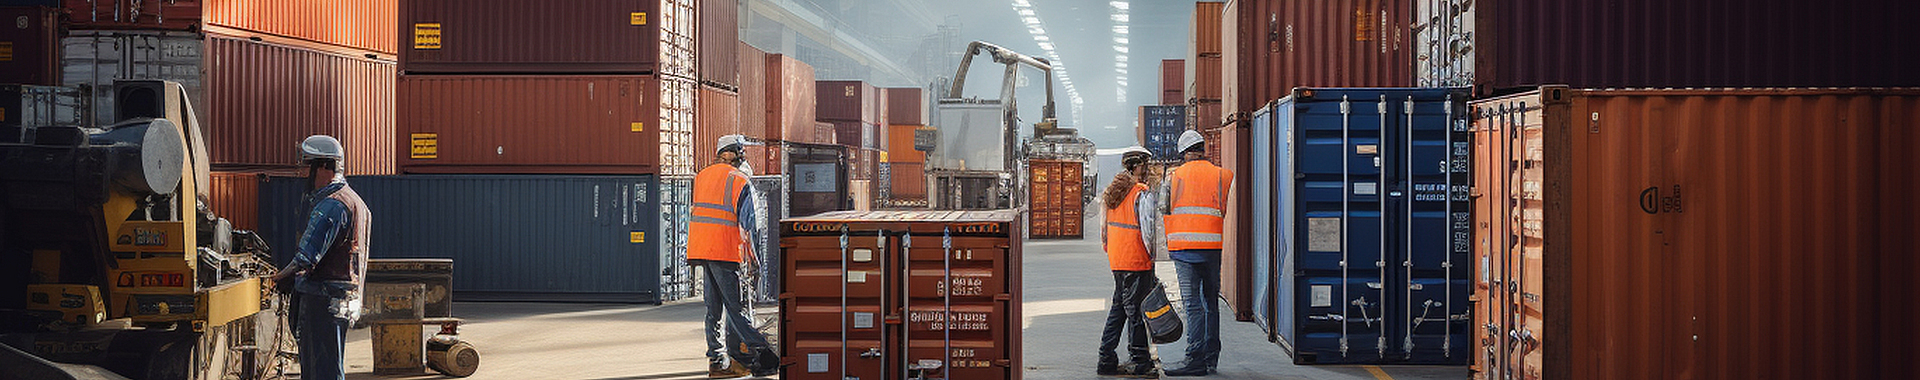 In einer Lagerhalle stehen mehrere ISO-Container. Vier Mitarbeitende verfolgen dabei den Ladevorgang der Container.